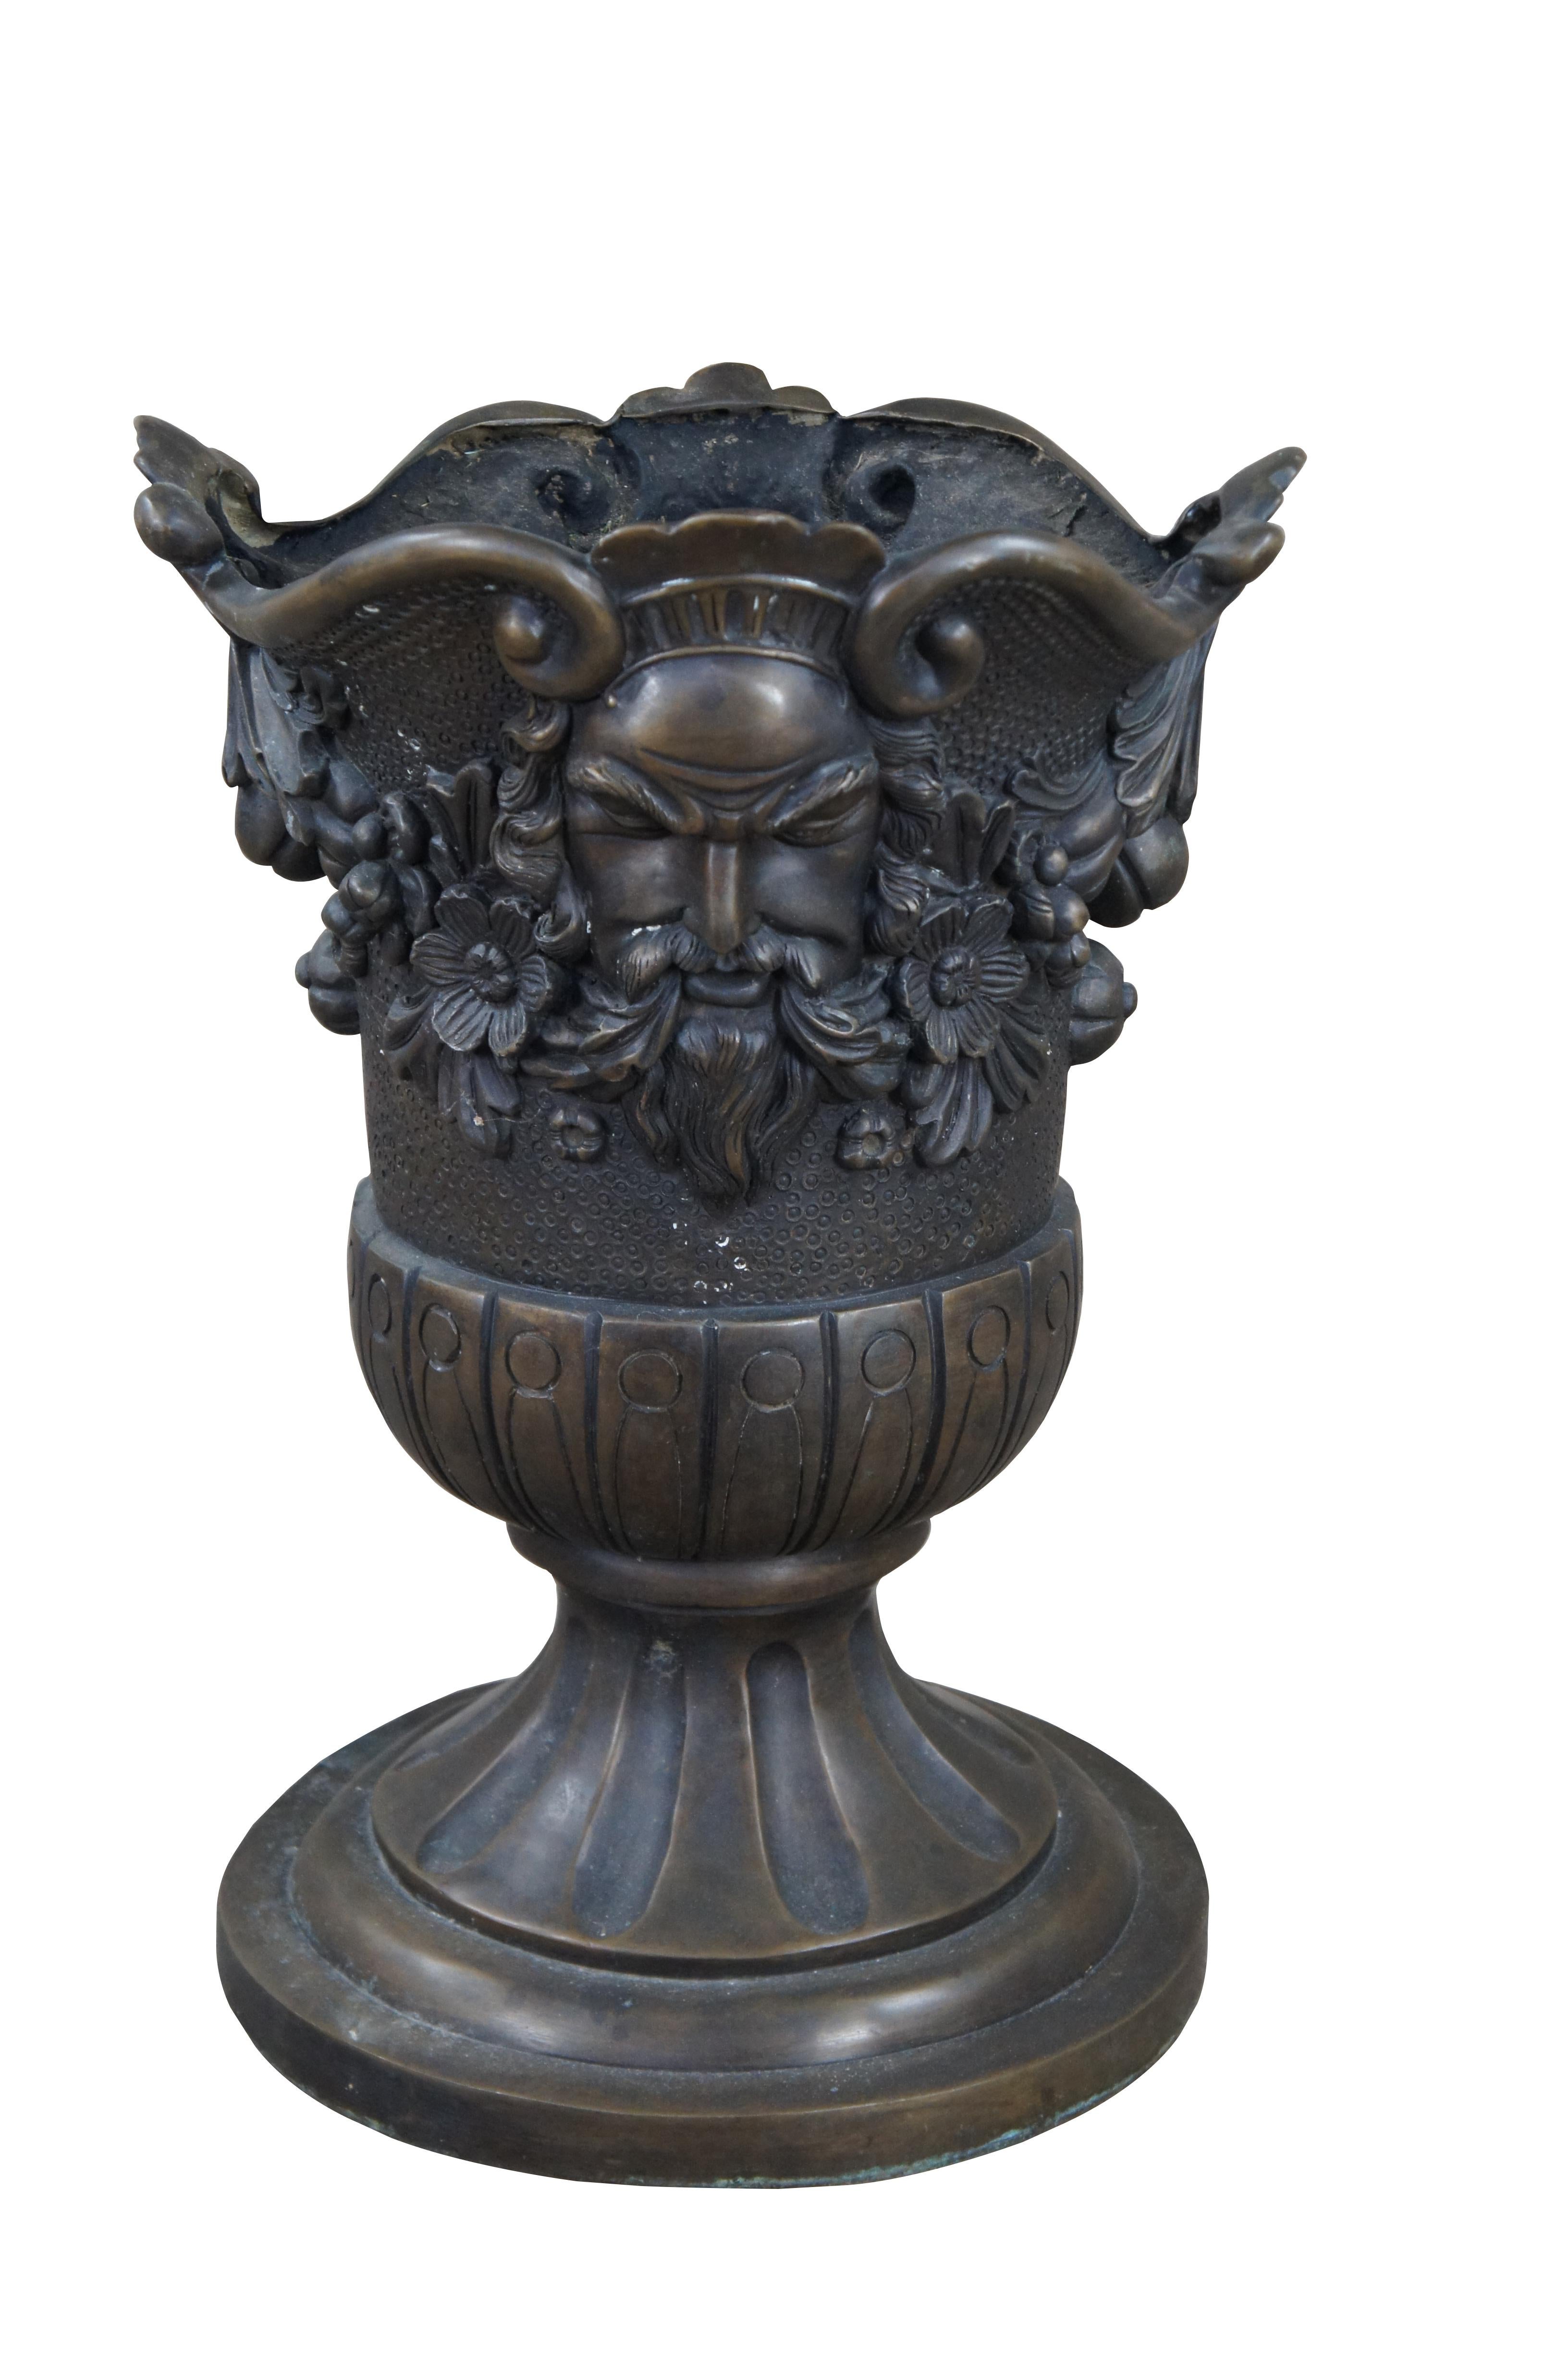 Eine schöne Urne oder ein Pflanzgefäß aus Bronze. Traditionelle griechische Form mit gelapptem Korpus und rundem, kanneliertem Sockel. Dekoriert mit einer Flachrelief-Darstellung von Zeus, der die gegenüberliegenden Seiten flankiert, inmitten von